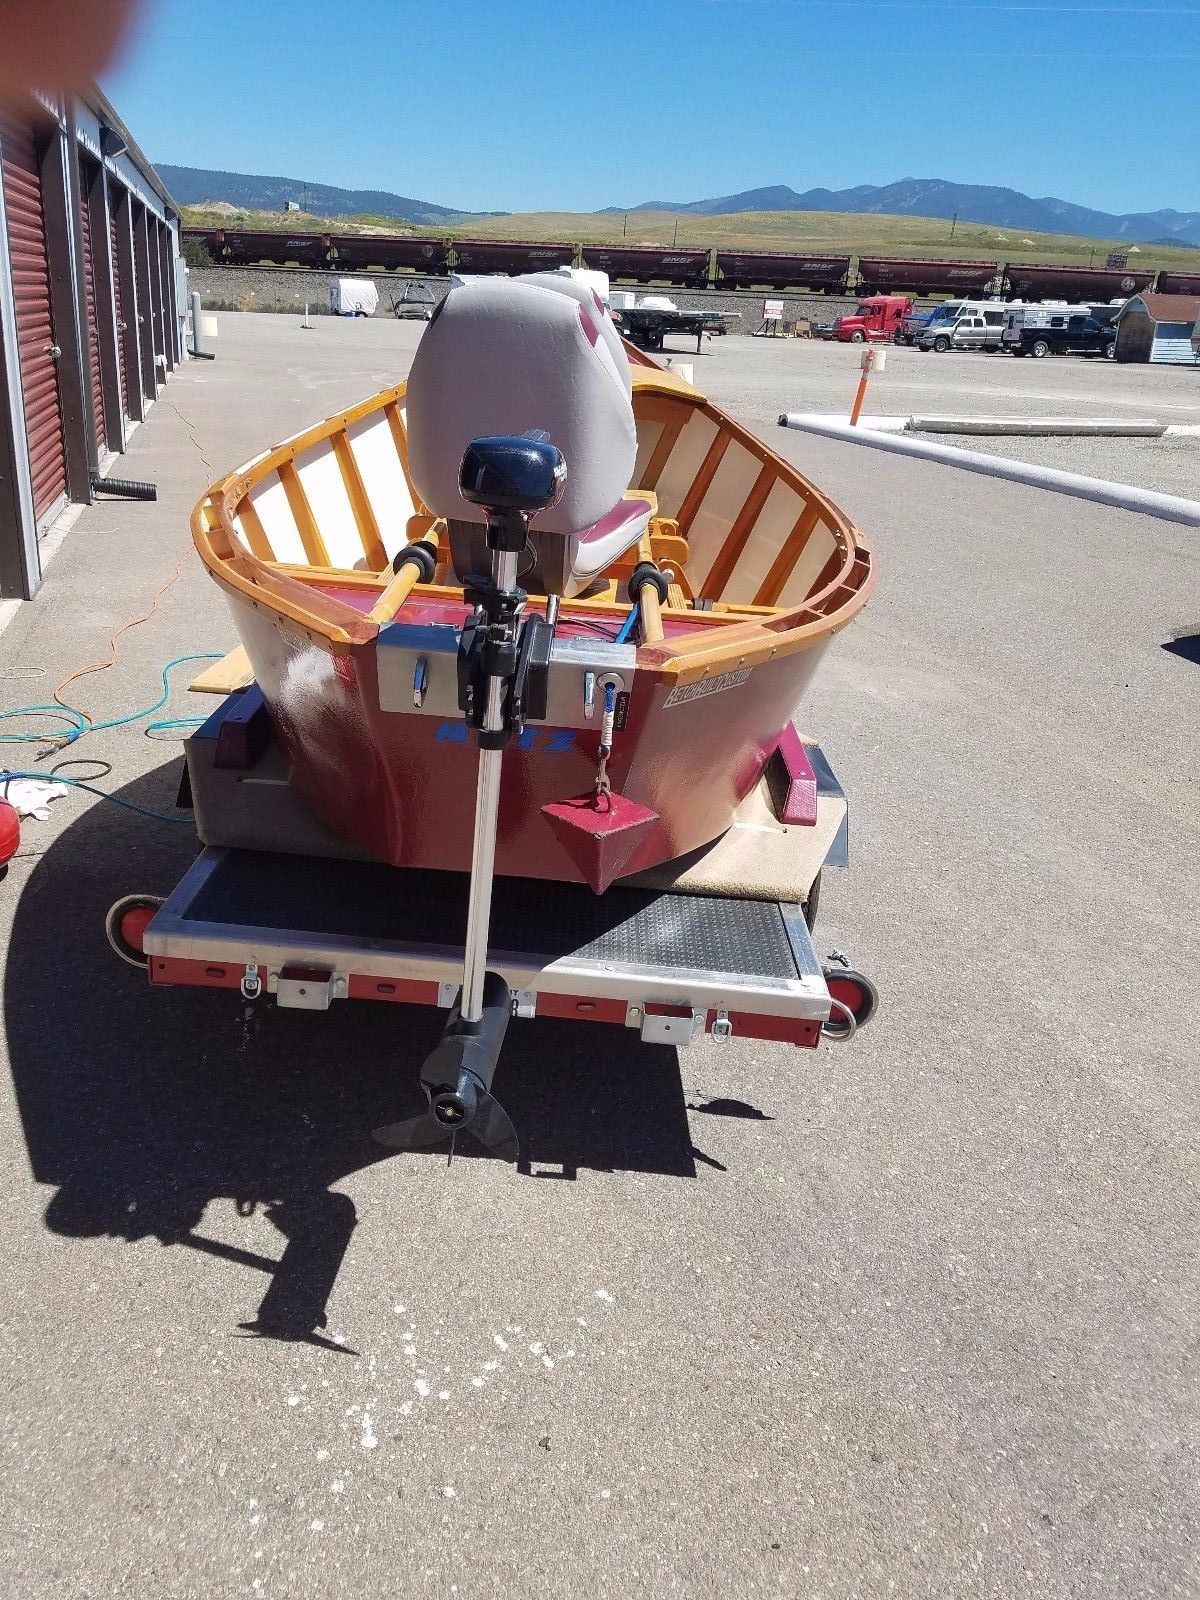 don hill/custom mini drift boat 2016 for sale for $11,500